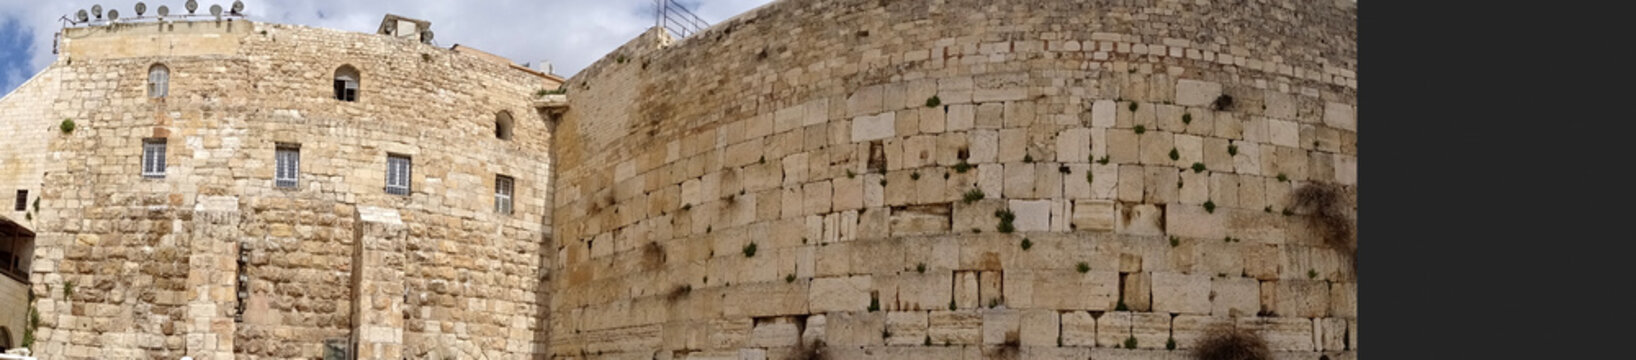 Panorama der Klagemauer in Jerusalem ohne Menschen